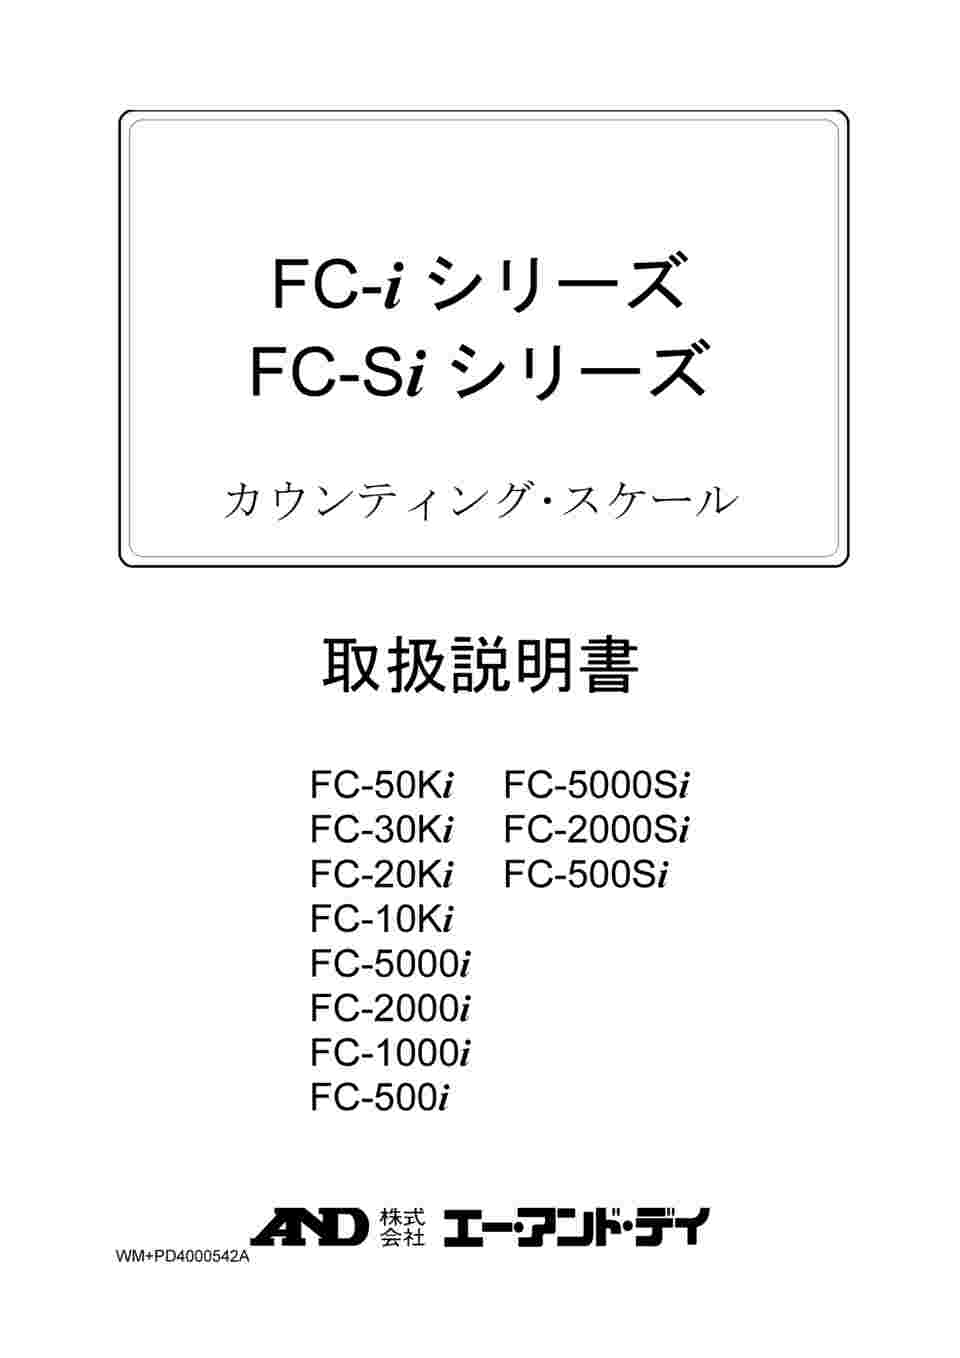 61-4673-76 個数計 FC-Si / FC-iシリーズ ひょう量:5000g 最小表示:0.5g FC5000I 【AXEL】 アズワン